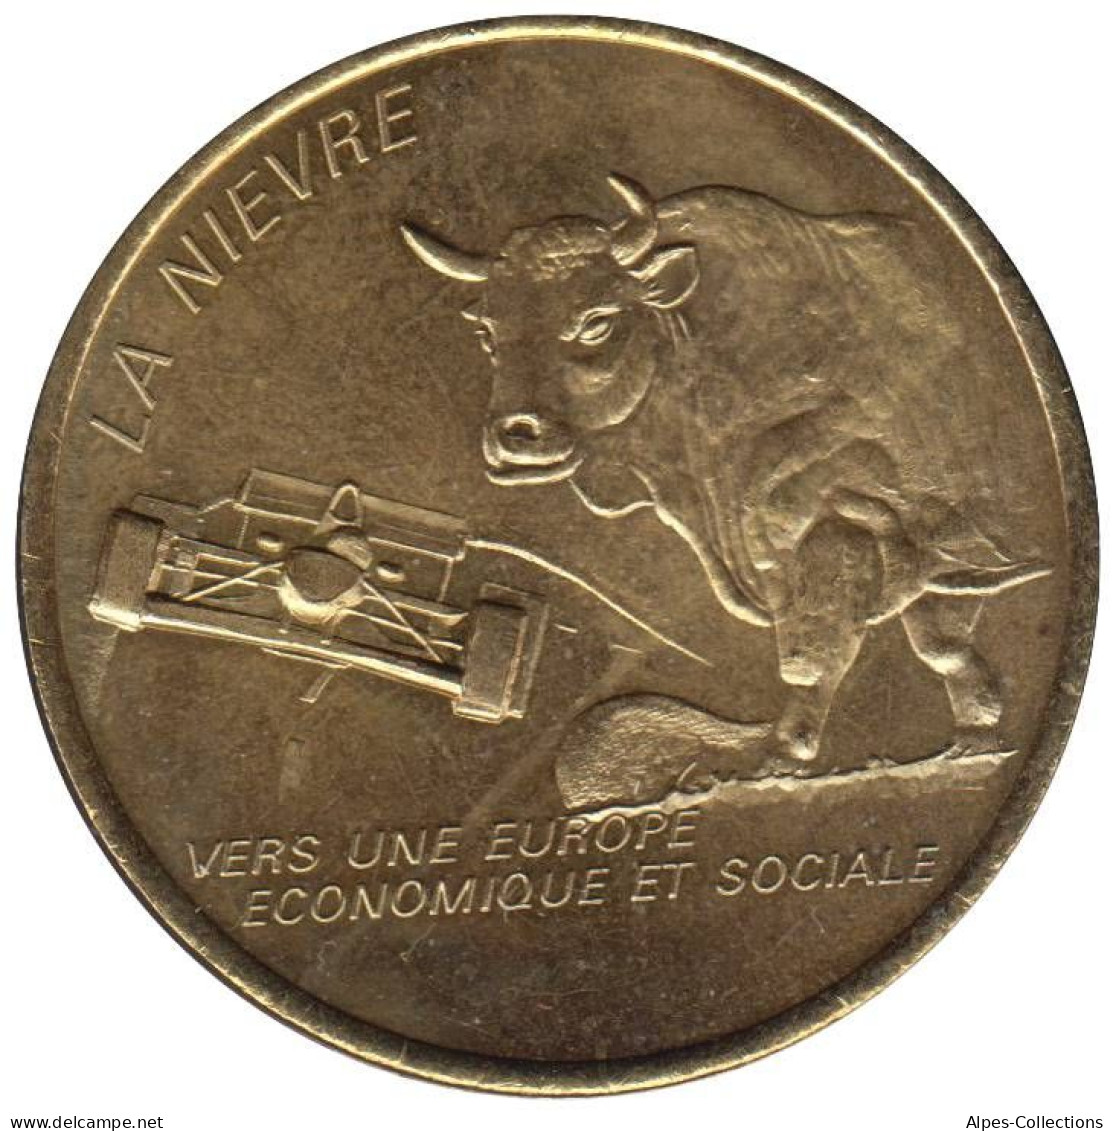 NIEVRE - EU0010.2 - 1 EURO DES VILLES - Réf: T341 - 1997 - Euros Of The Cities